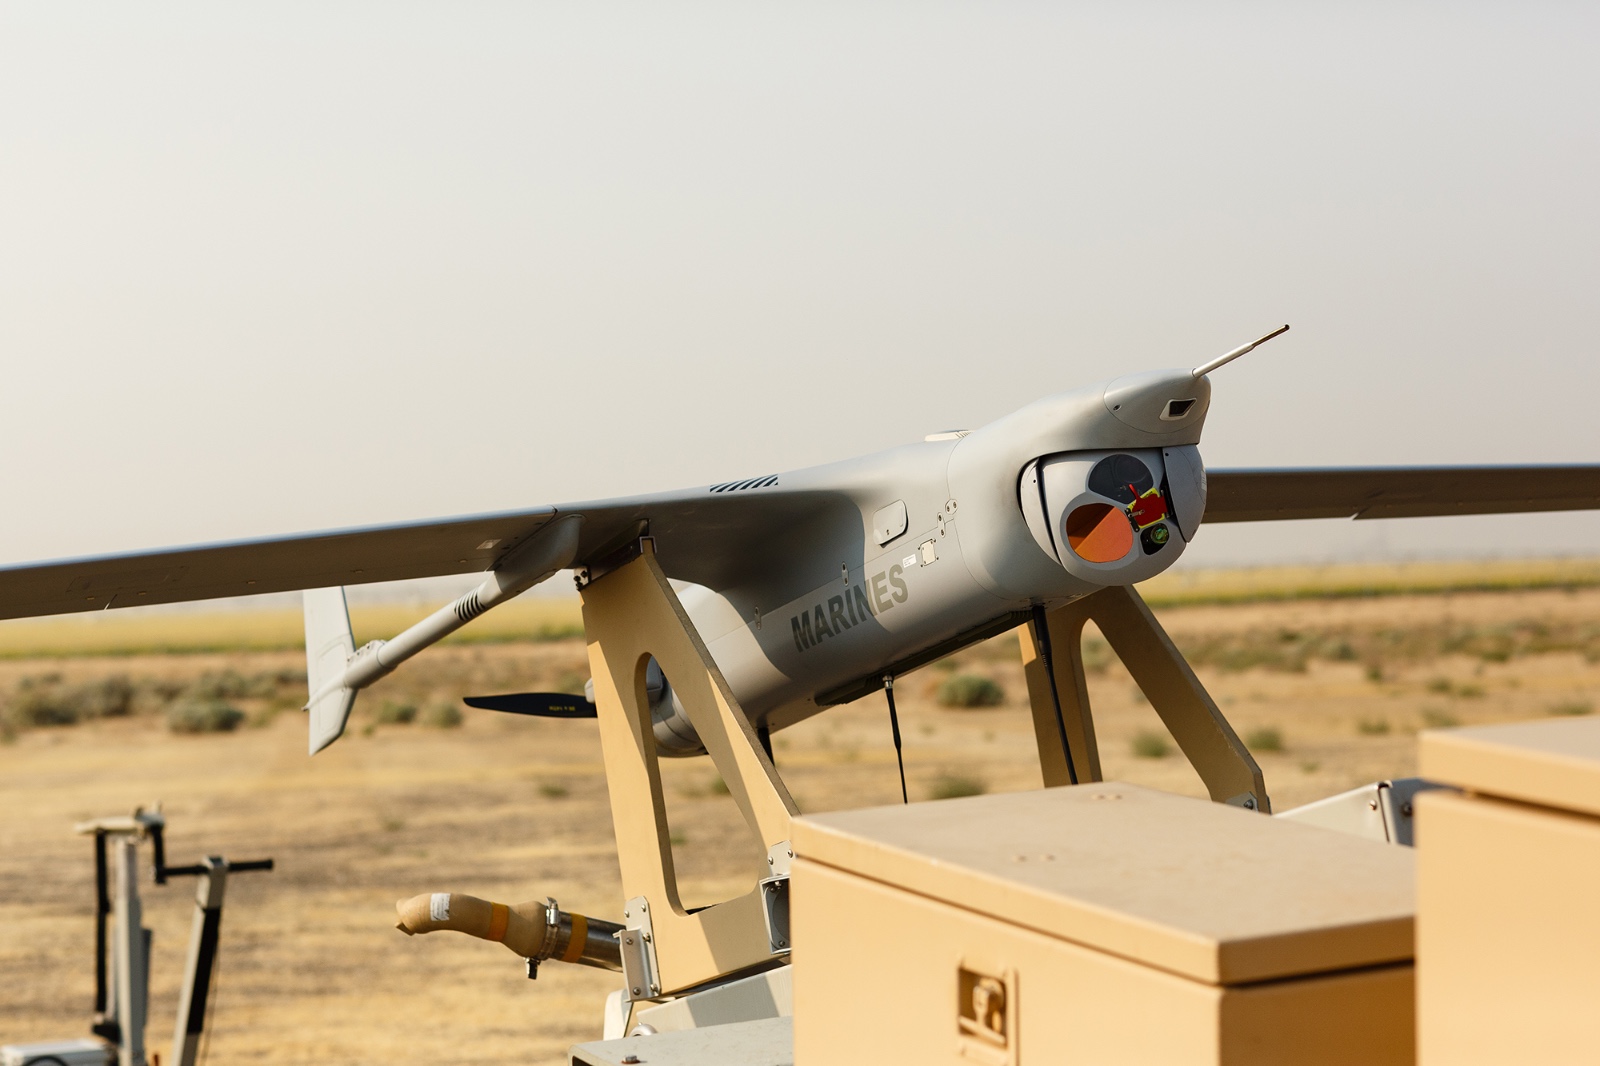 UNITED OFFICE® Destructeur de documents UAV 300 A1, 21…